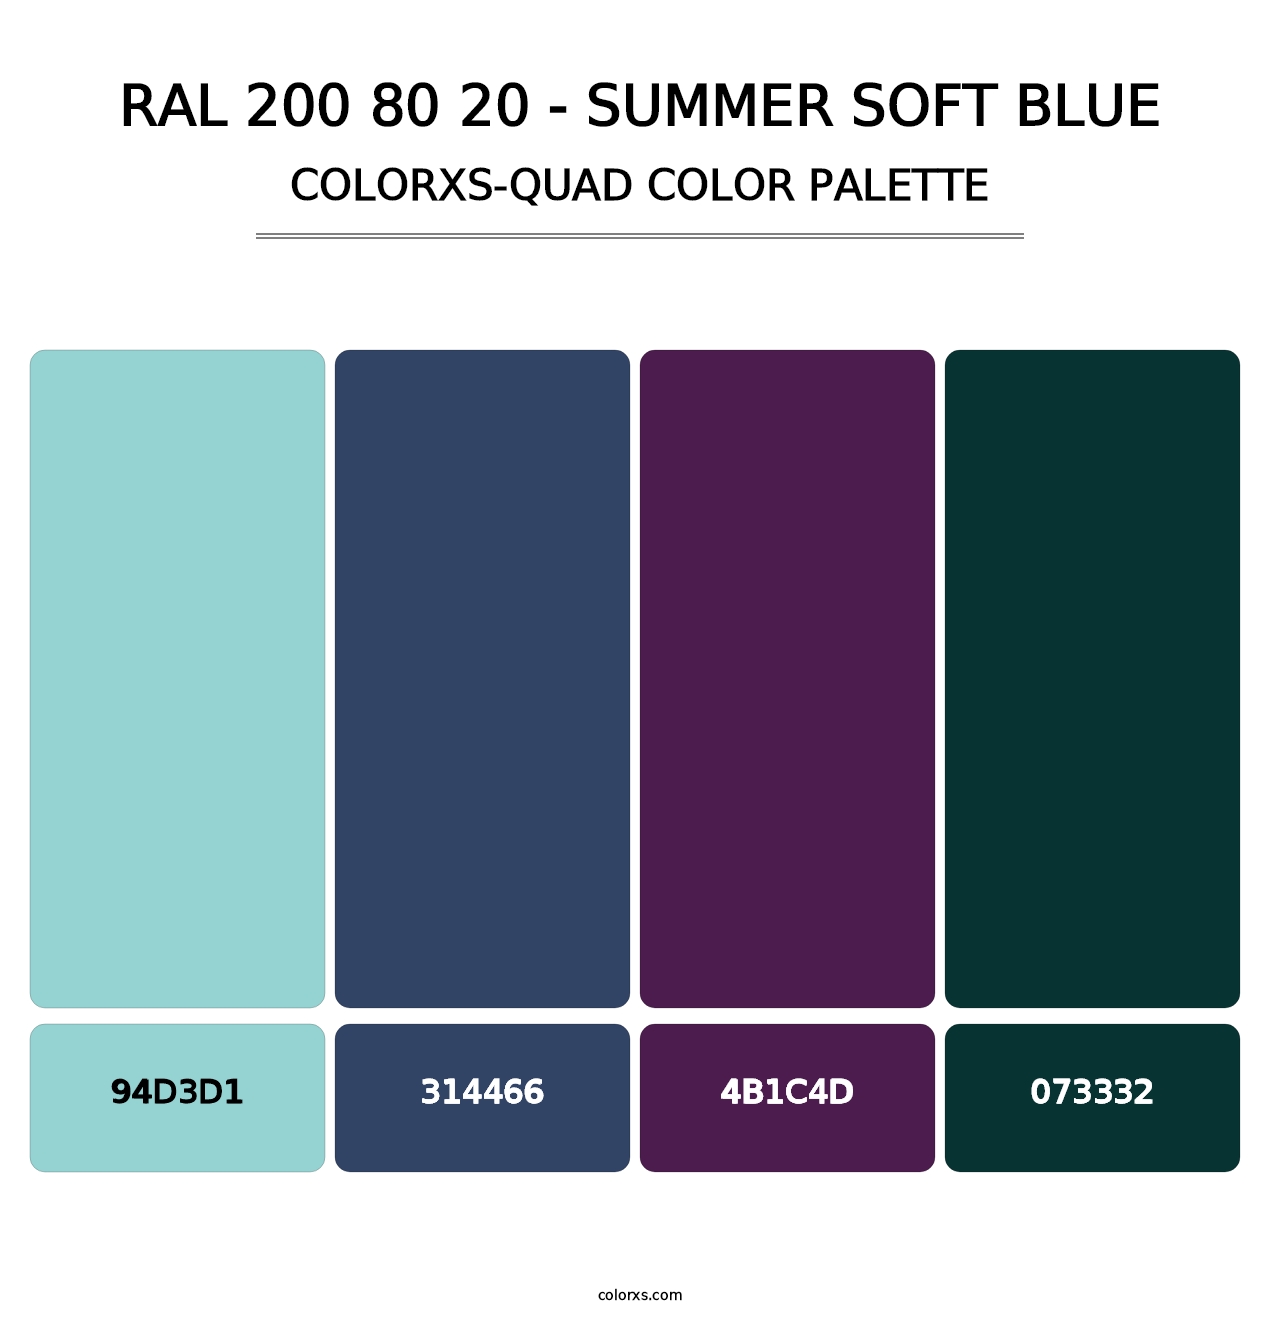 RAL 200 80 20 - Summer Soft Blue - Colorxs Quad Palette